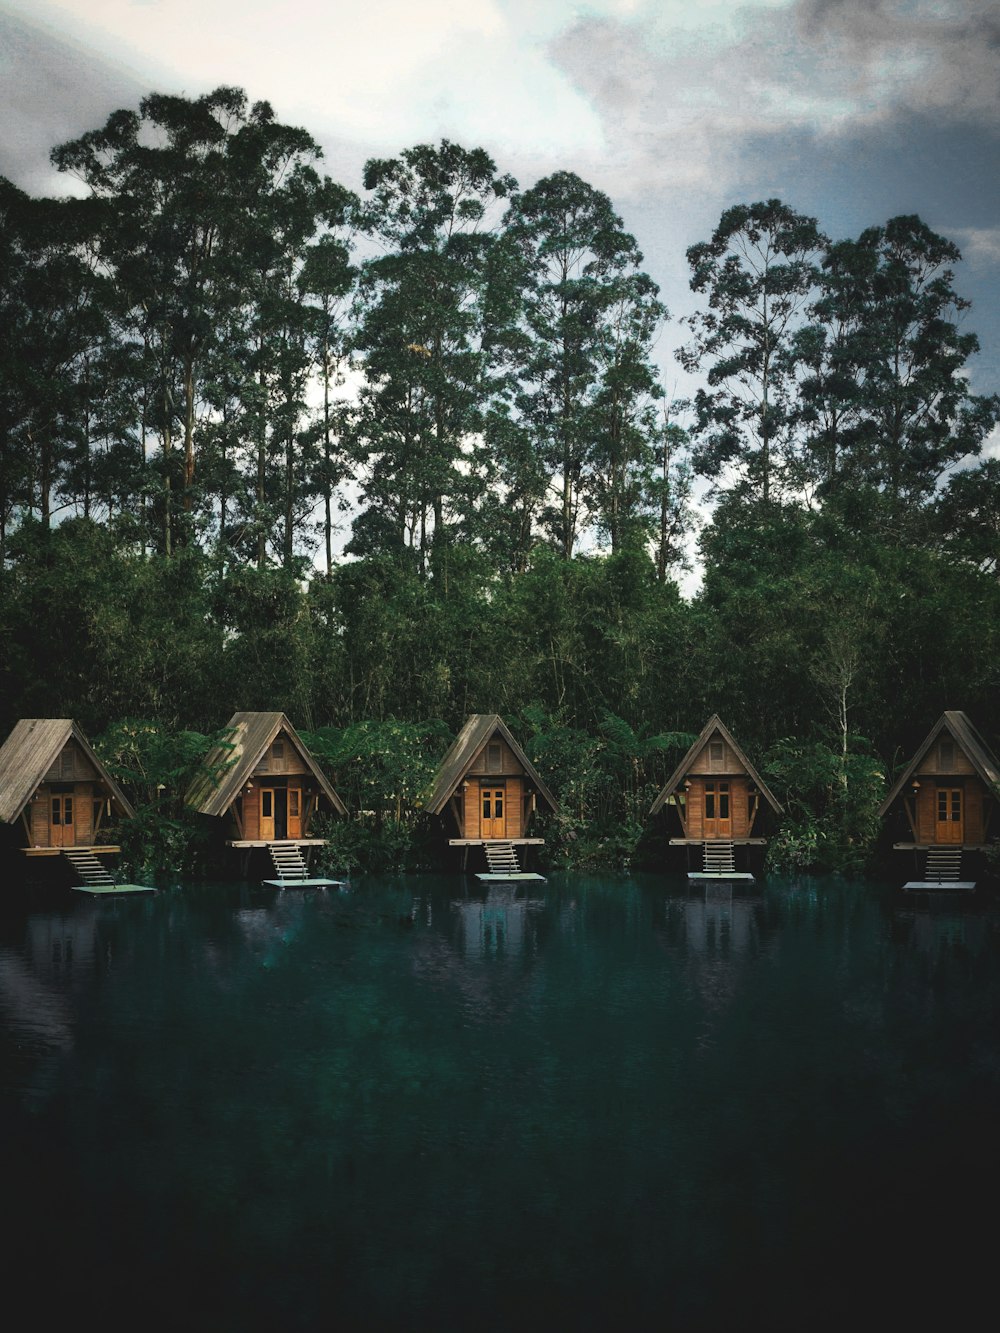 Casa de madera marrón en el lago rodeada de árboles durante el día